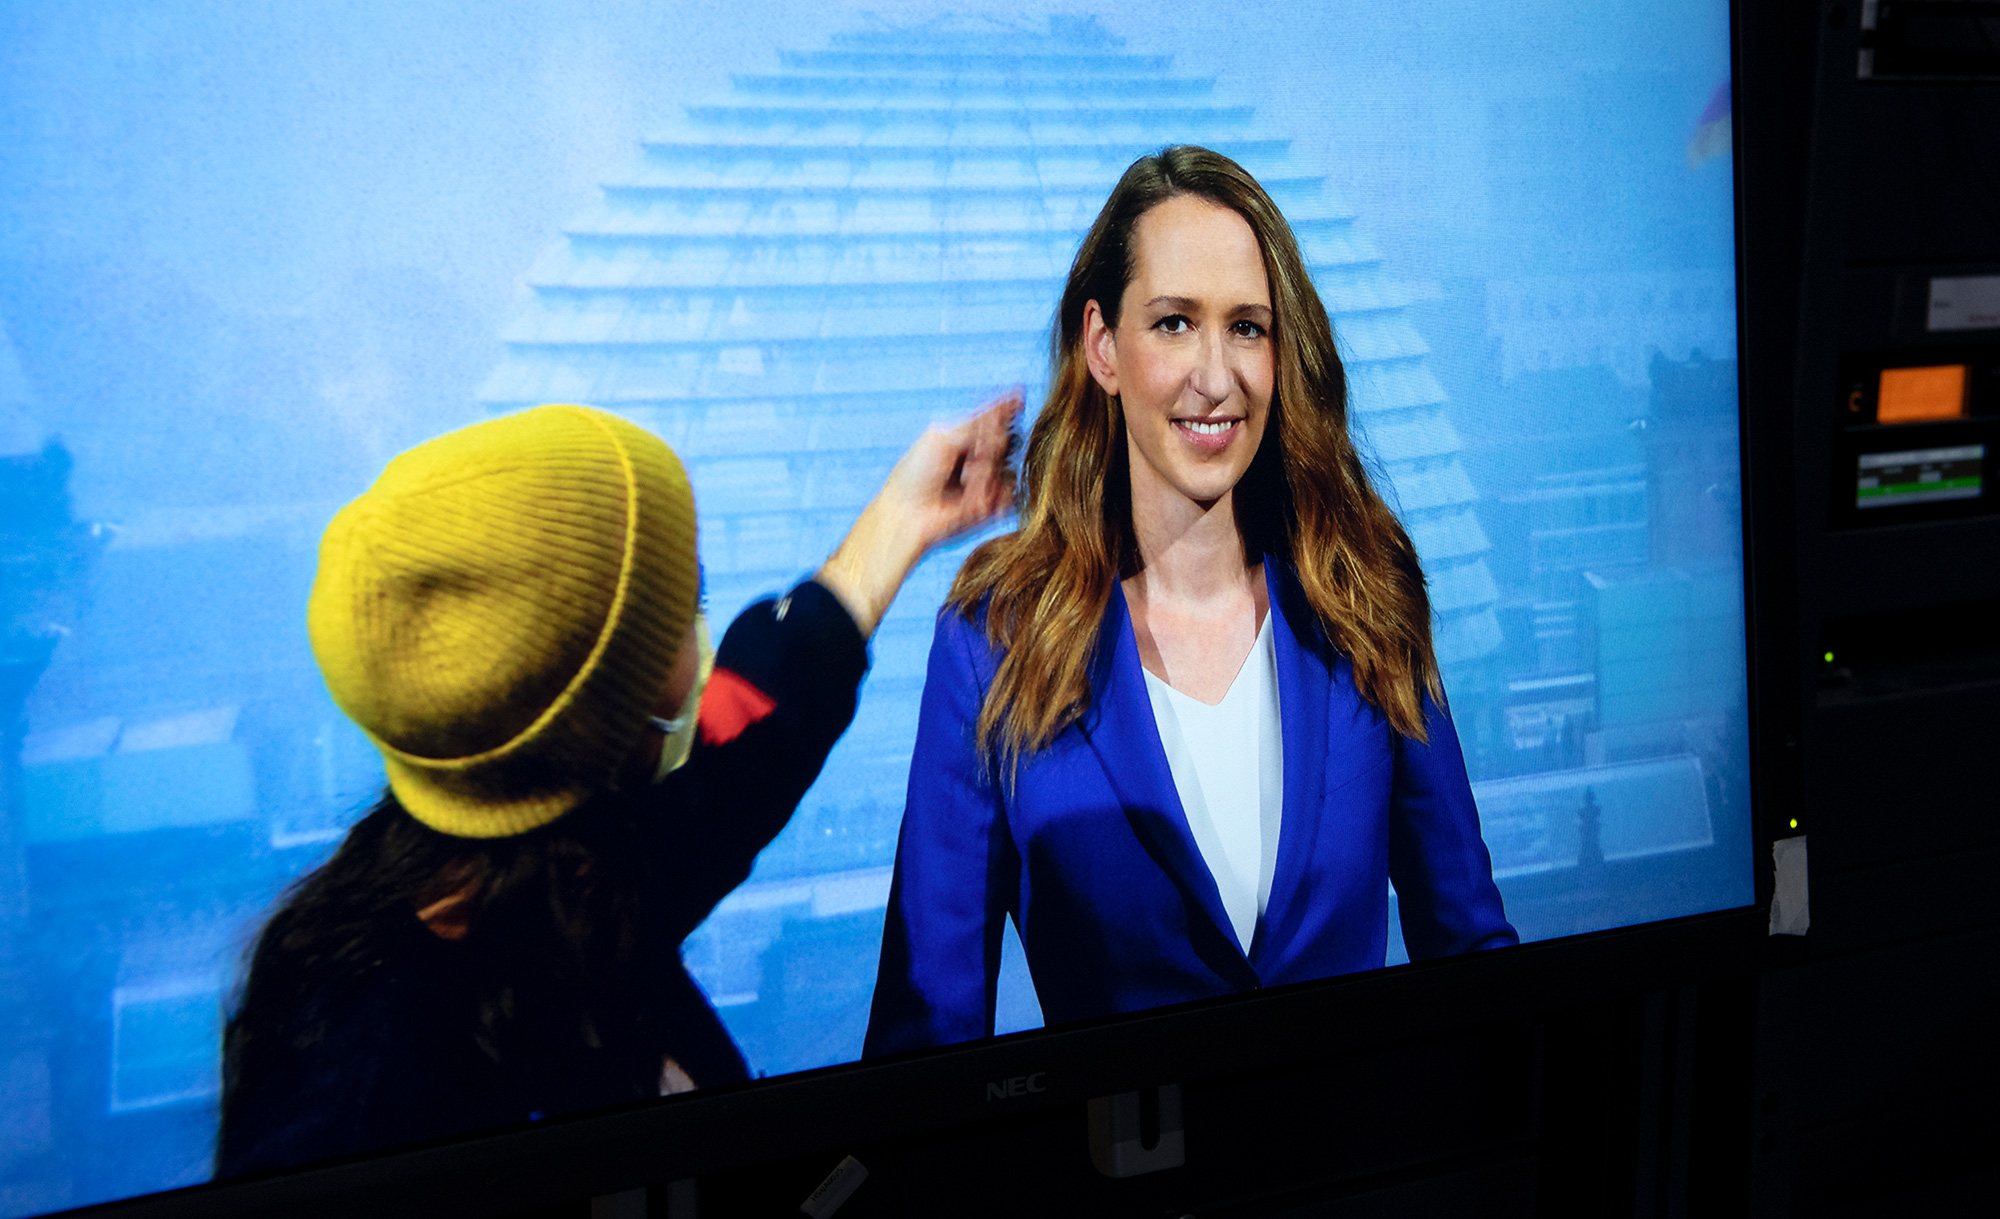 Nachrichtensprecherin auf einem Bildschirm im Studio (Foto)